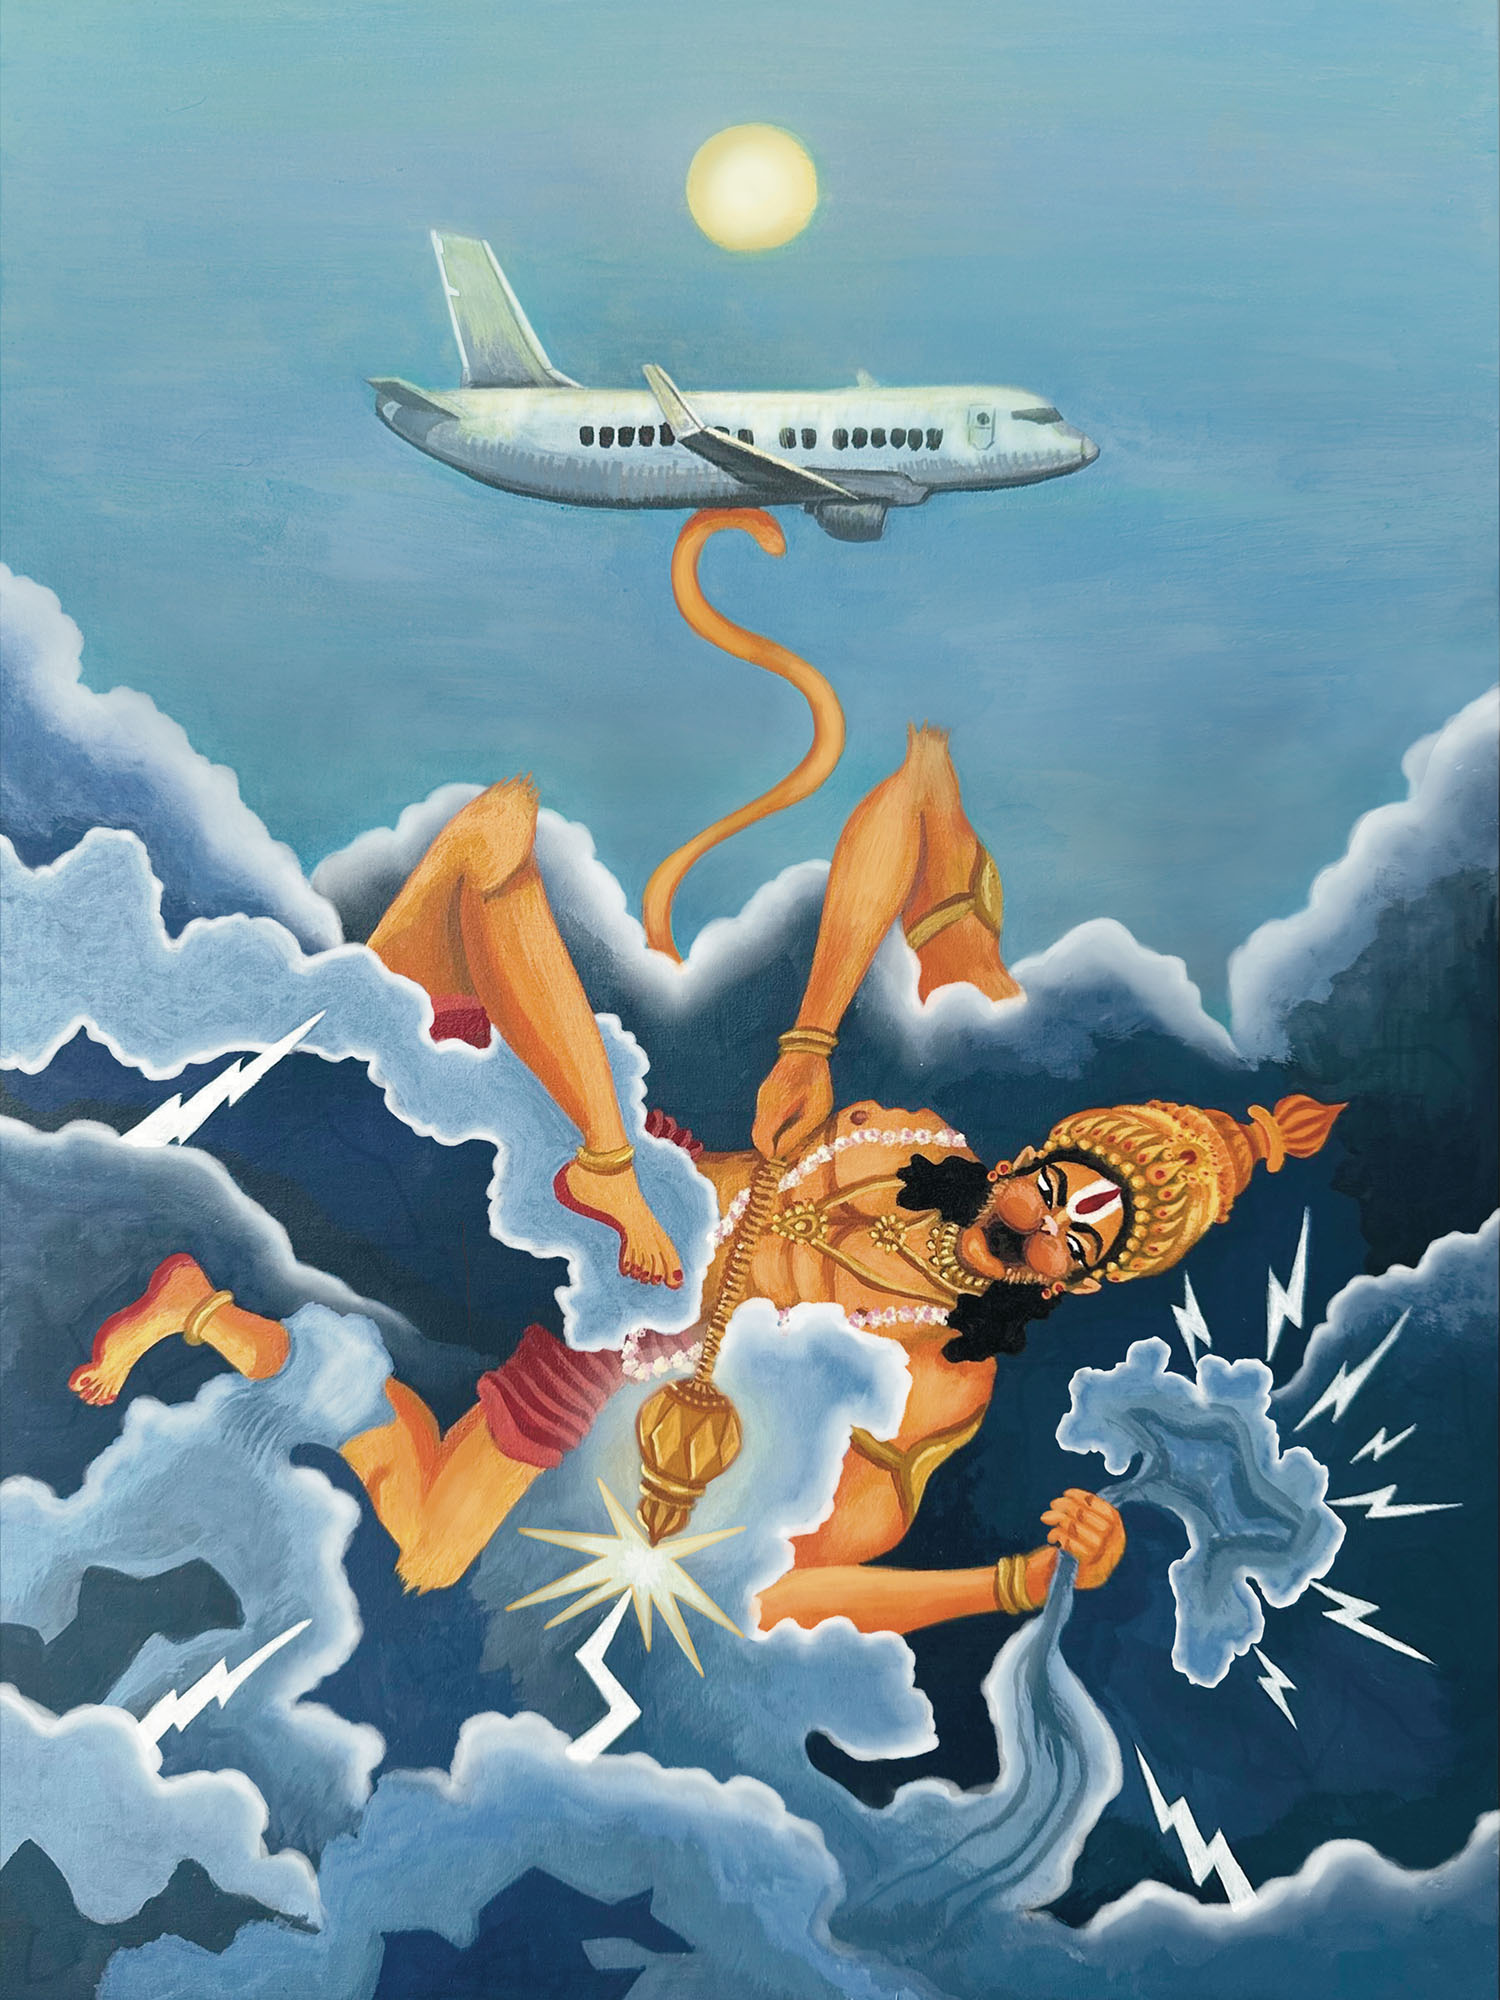 Lord Hanuman Fights Turbulent Clouds